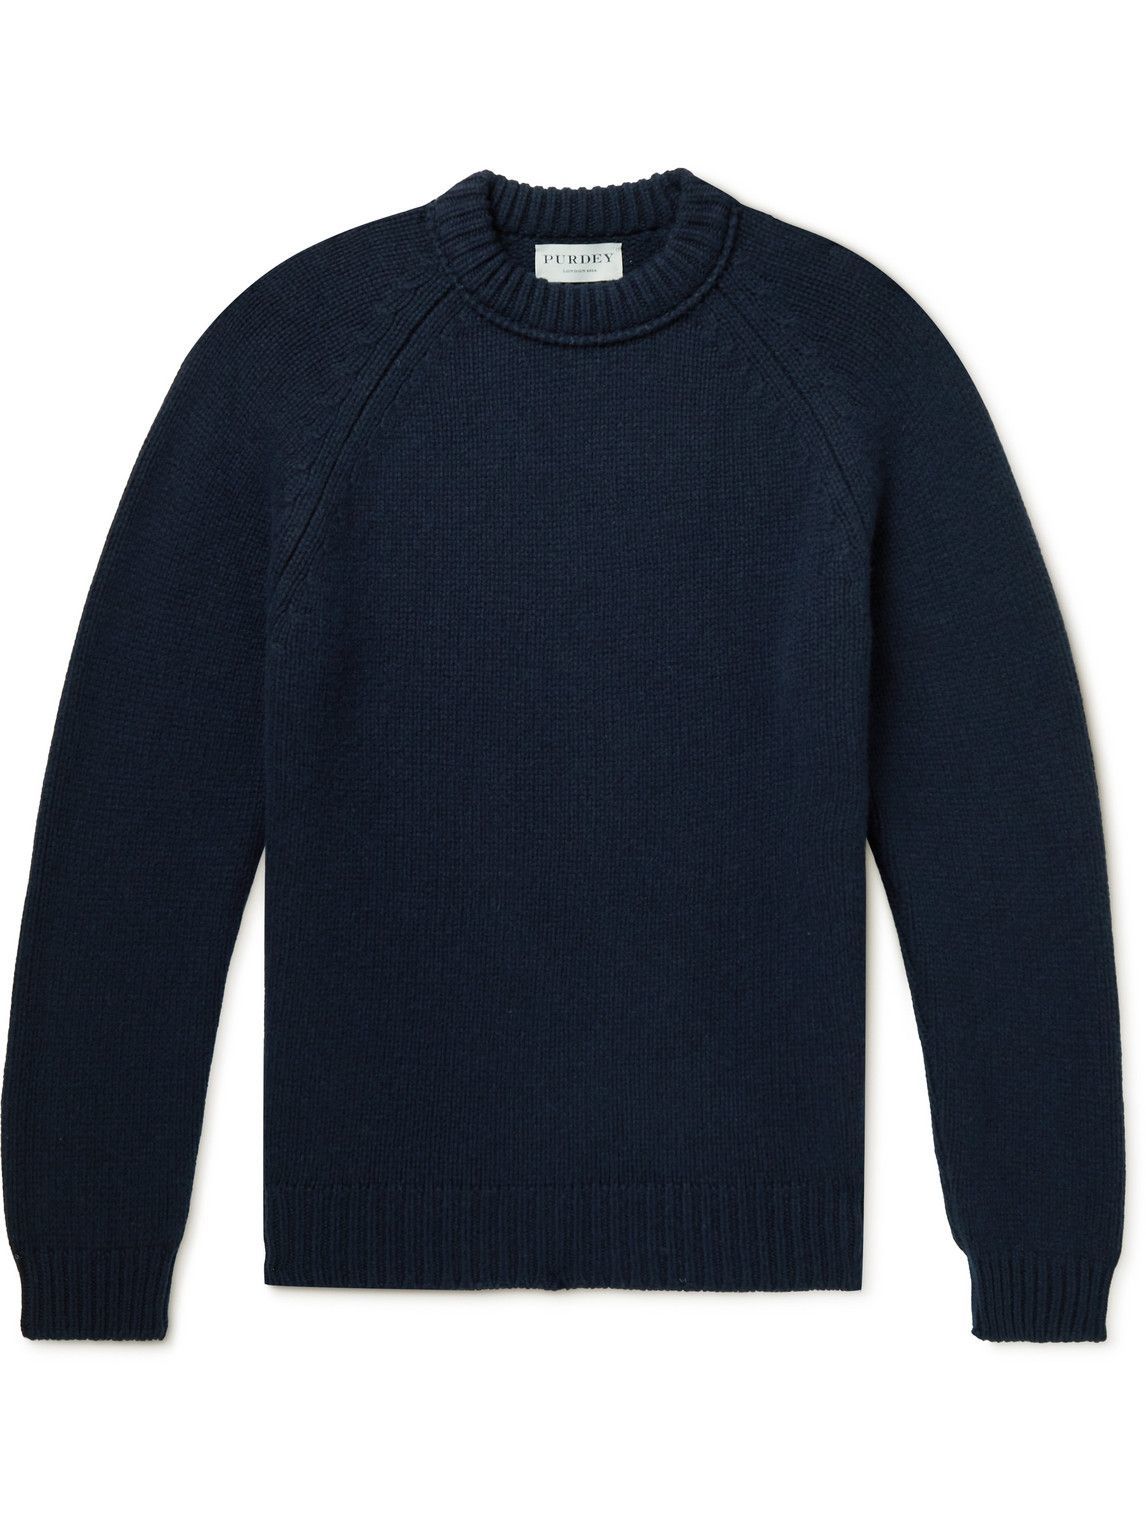 Purdey - Cashmere Sweater - Blue Purdey